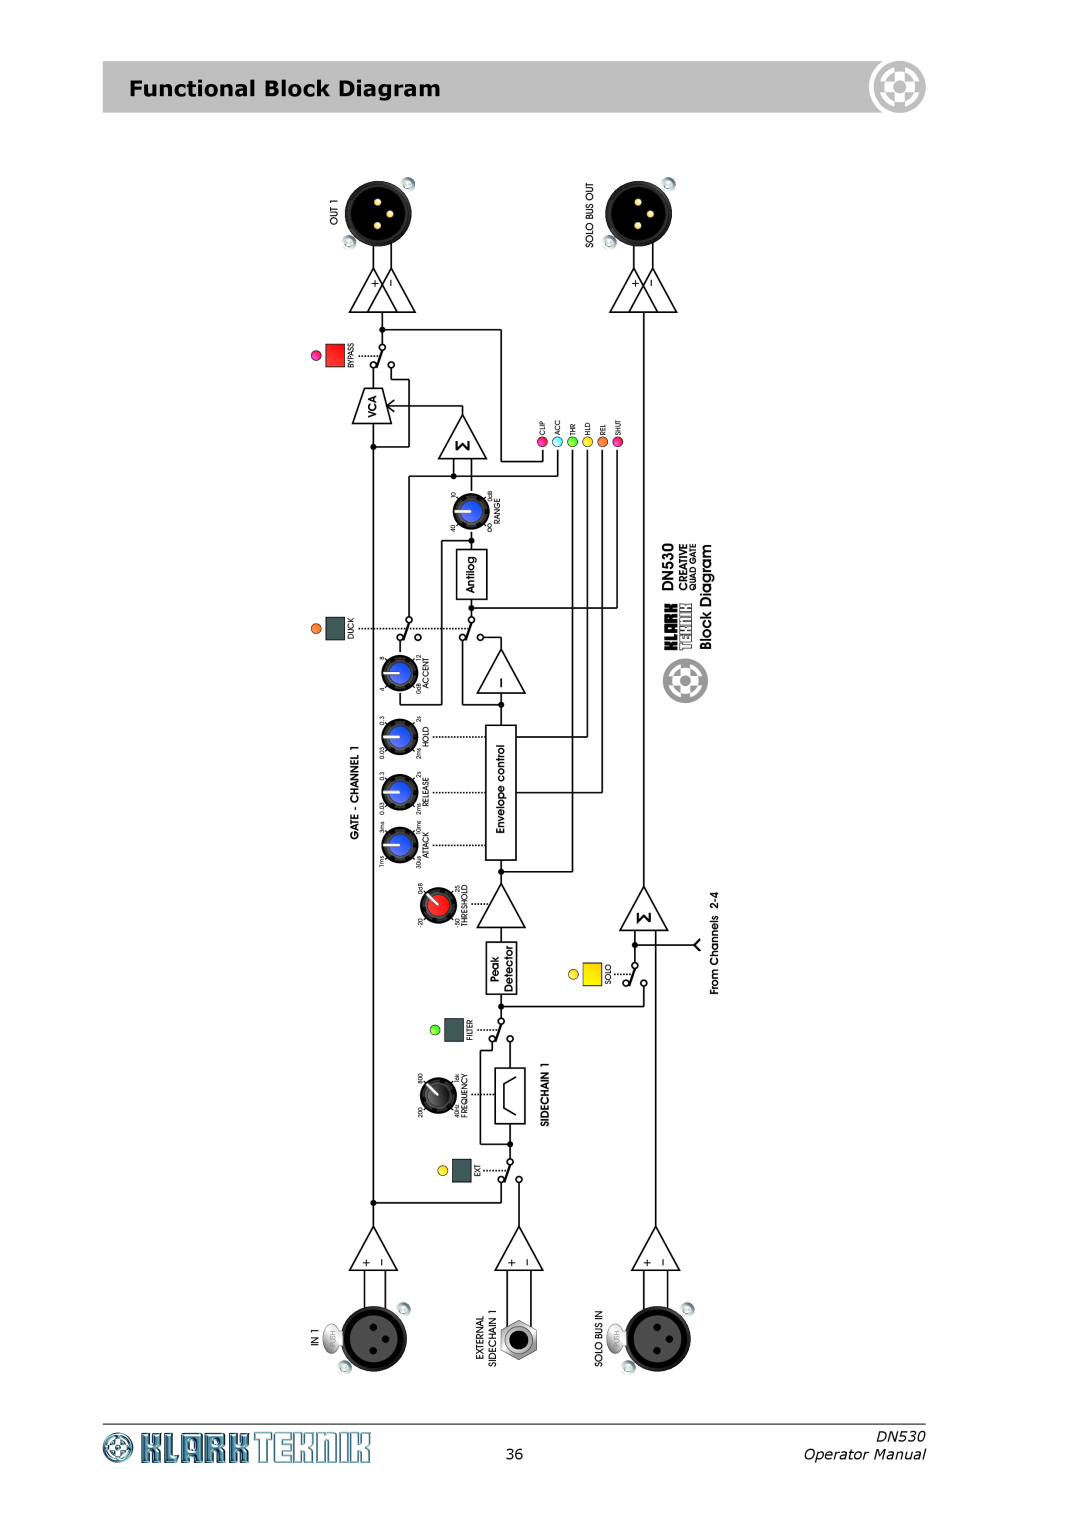 Klark Teknik Functional Block Diagram, DN530 Operator Manual, Antilog, Creative, GATE-CHANNEL1, Envelopecontrol, Peak 